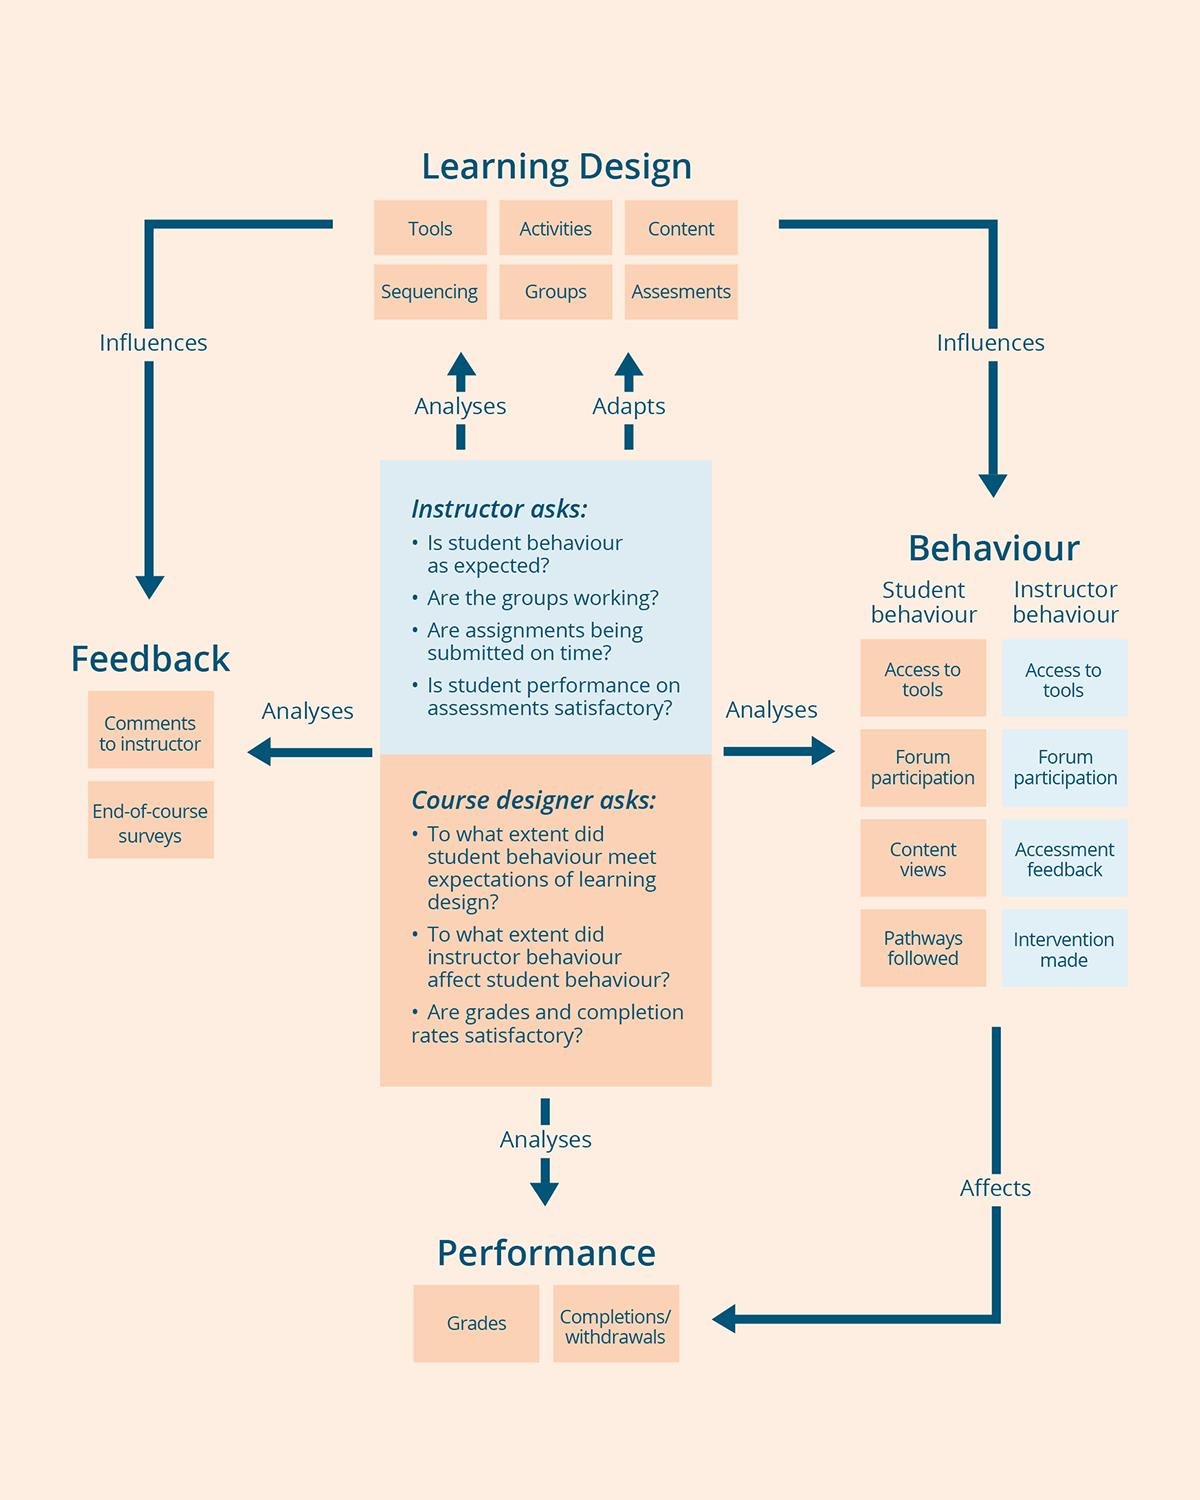 Modell for syklisk utvikling av læringsdesign.